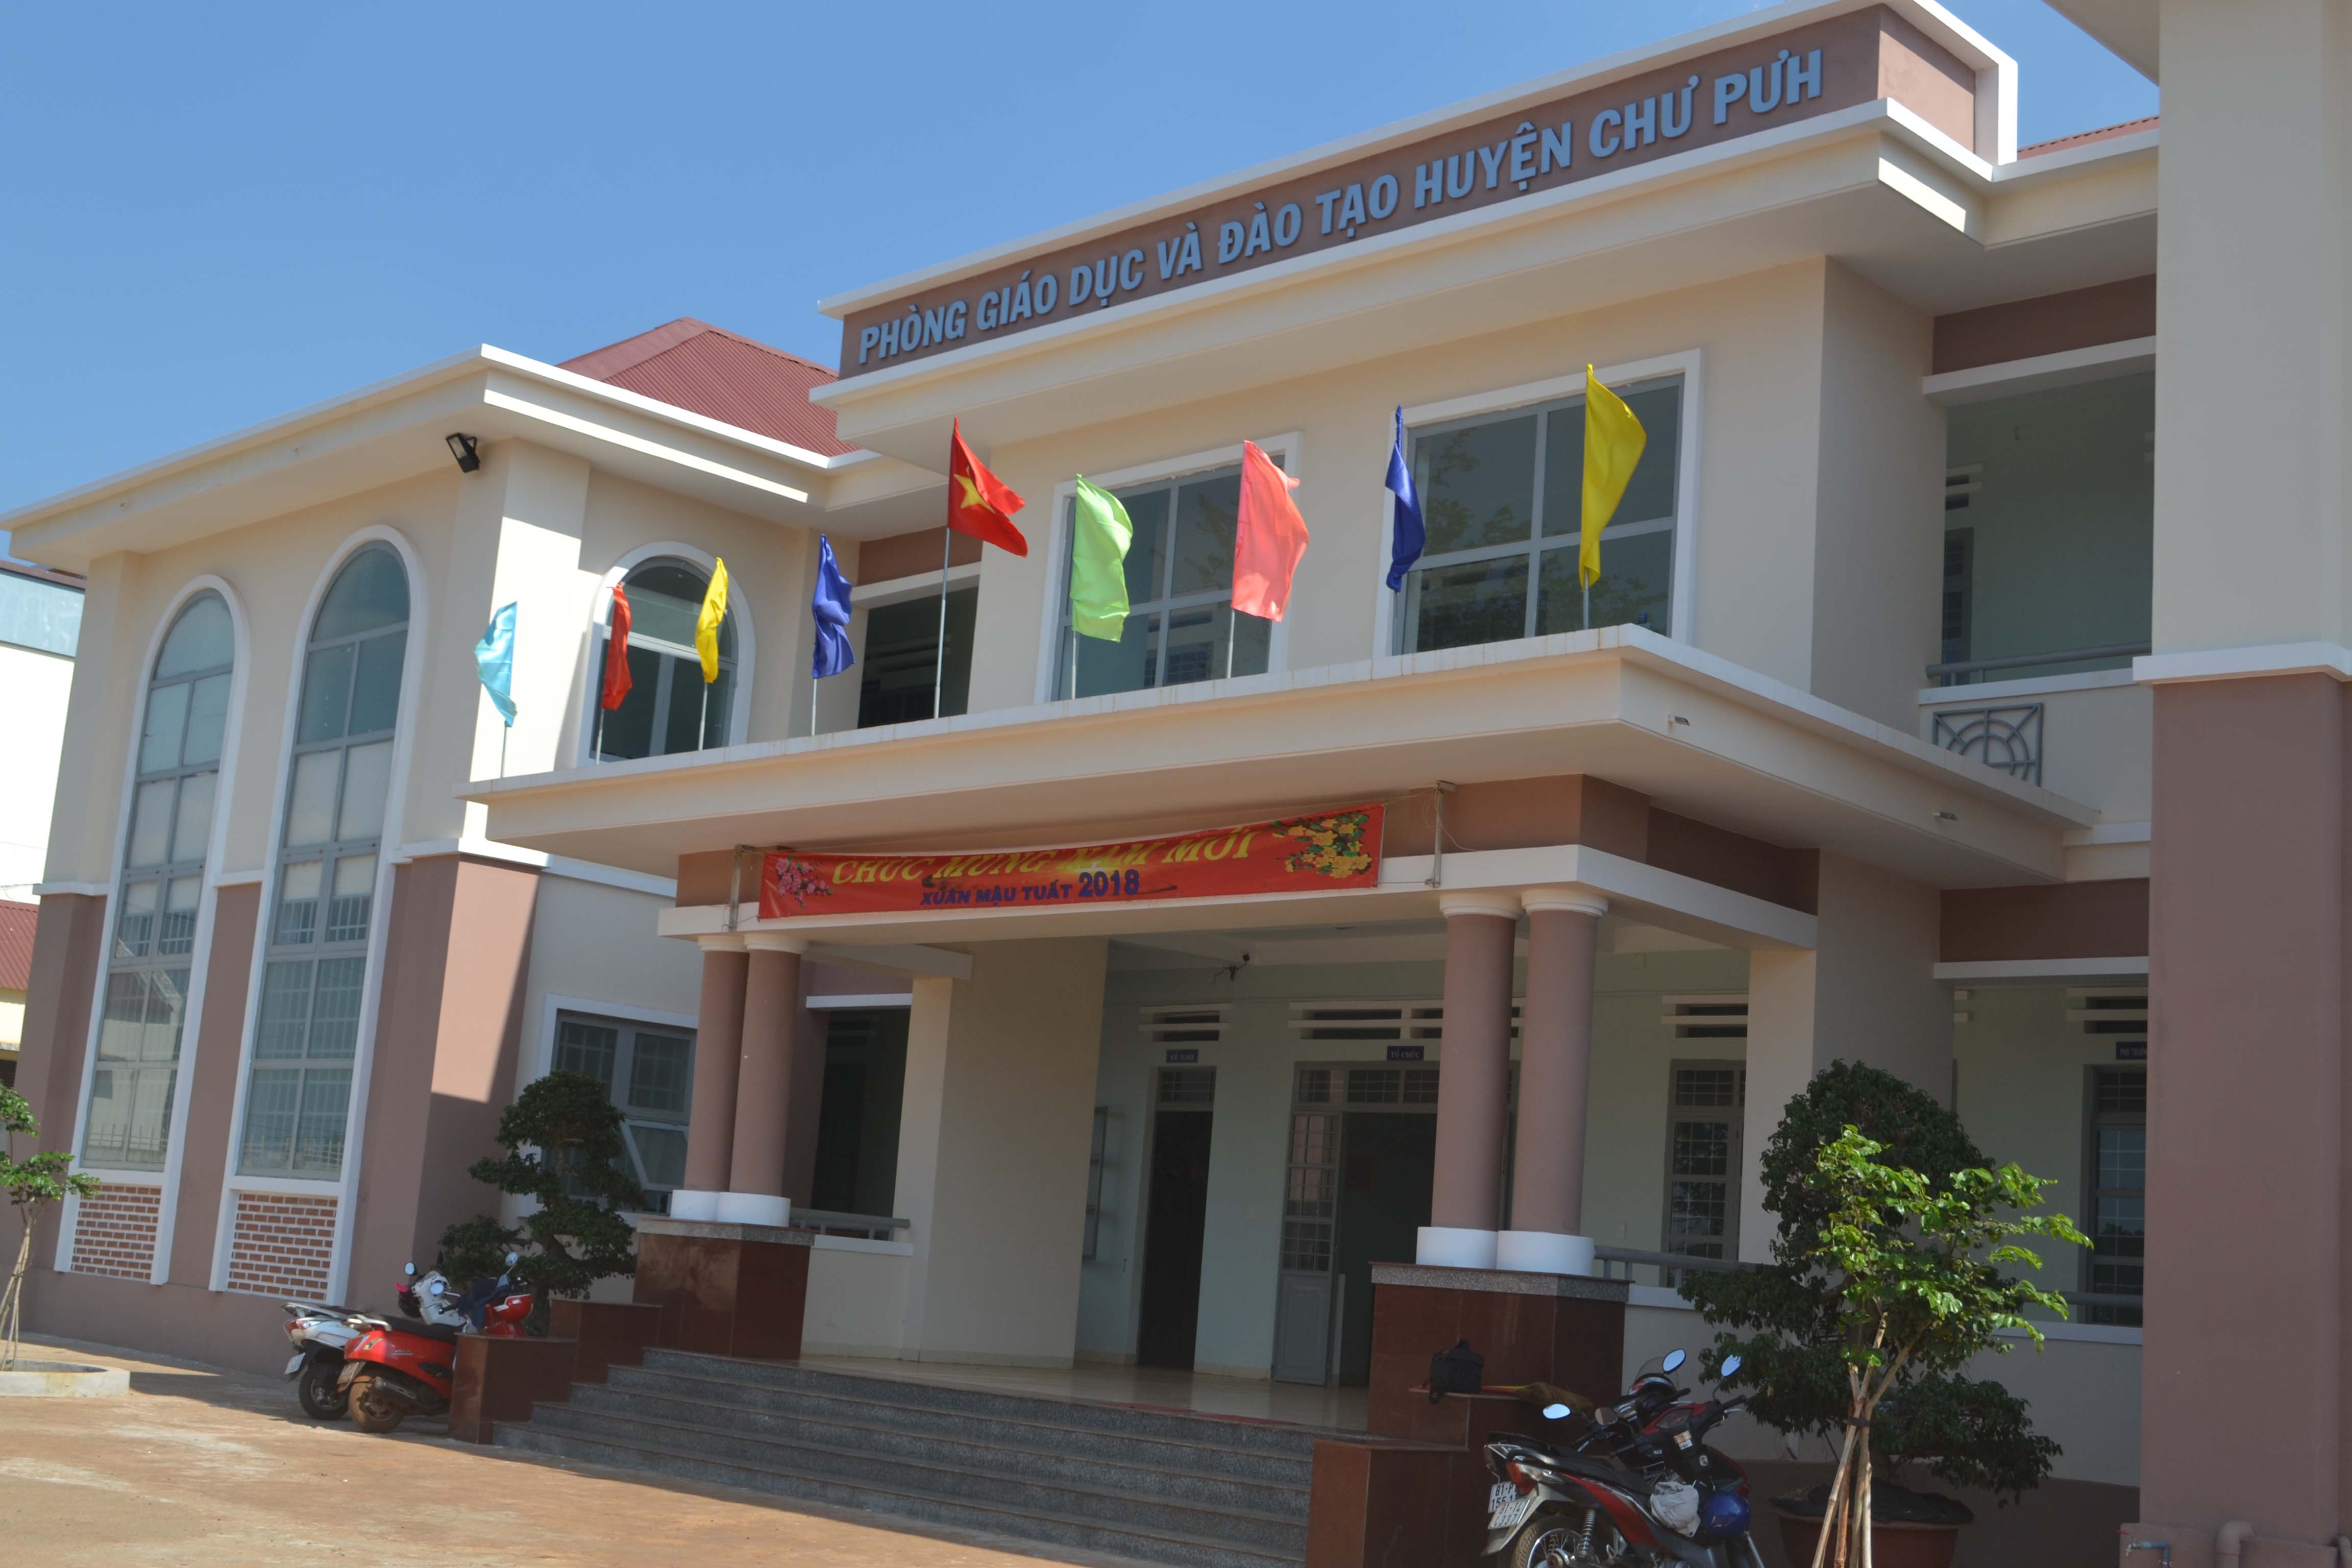 Trụ sở phòng Giáo dục và Đào tạo huyện Chư Pưh. Ảnh: H.C